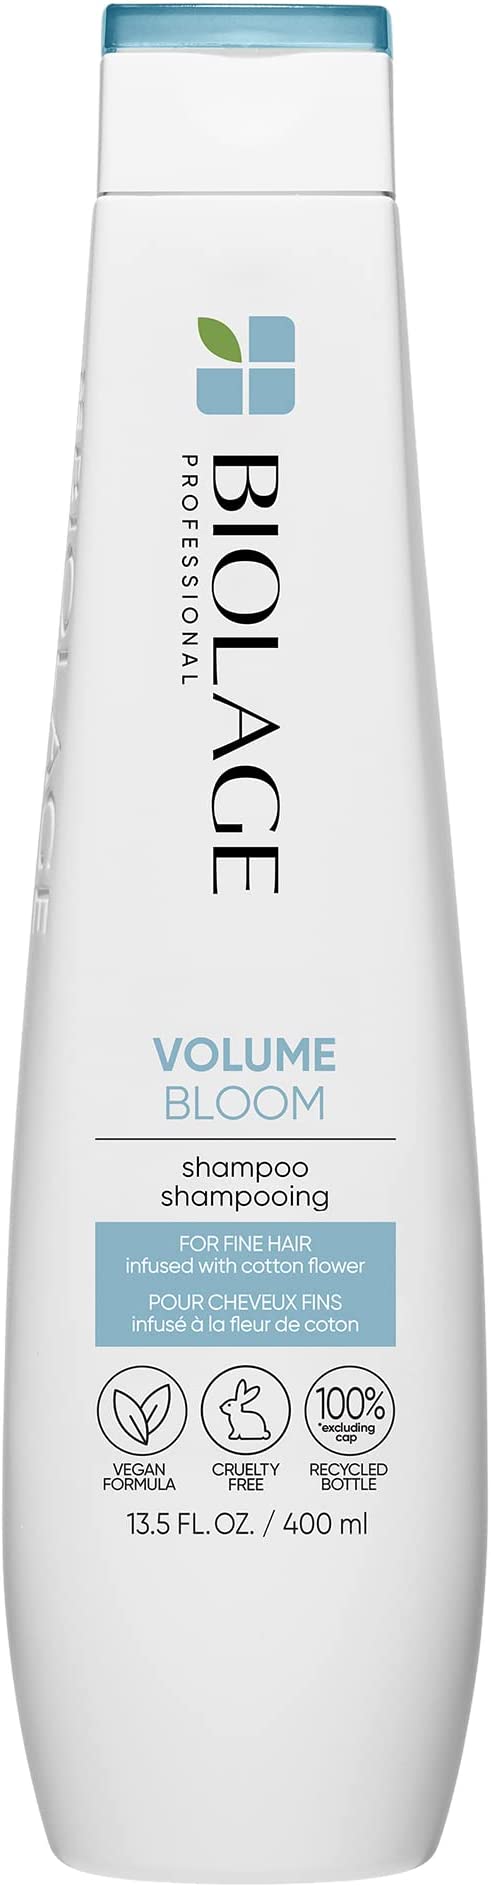 MATRIX Biolage Volumebloom Shampoo 400ml